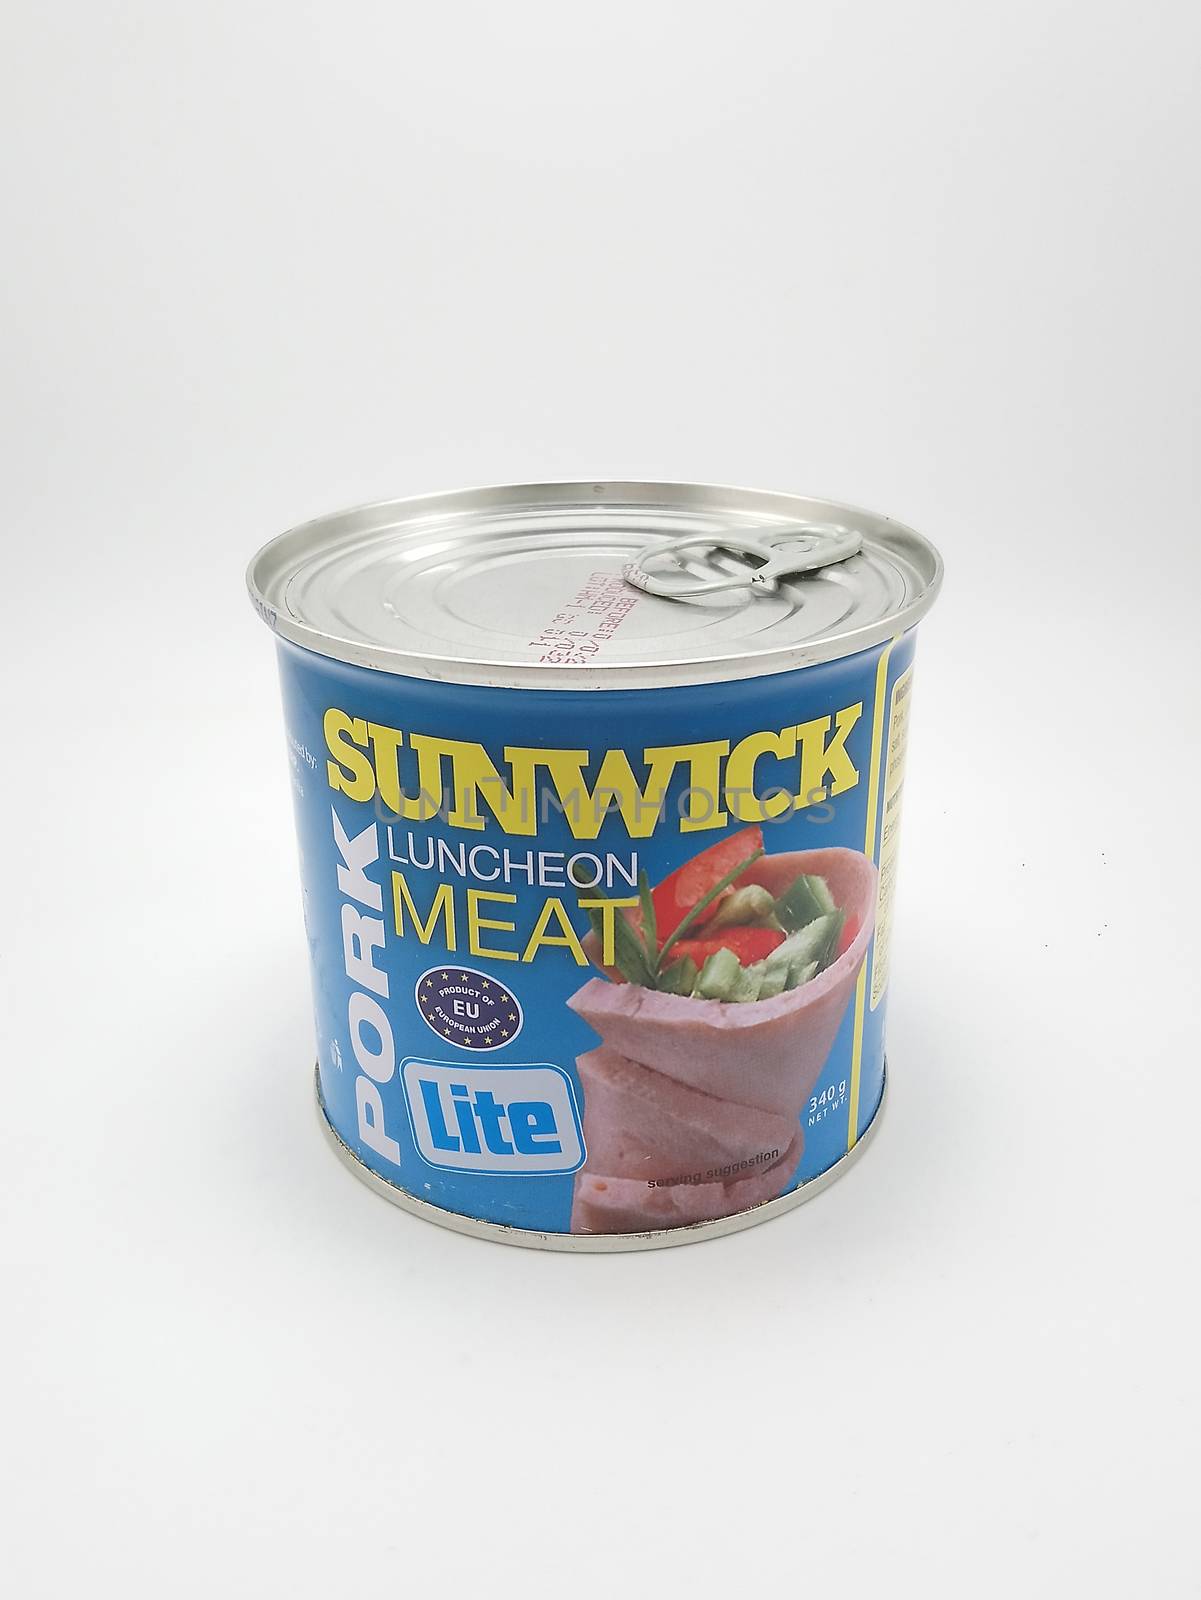 MANILA, PH - SEPT 25 - Sunwick pork luncheon meat lite on September 25, 2020 in Manila, Philippines.